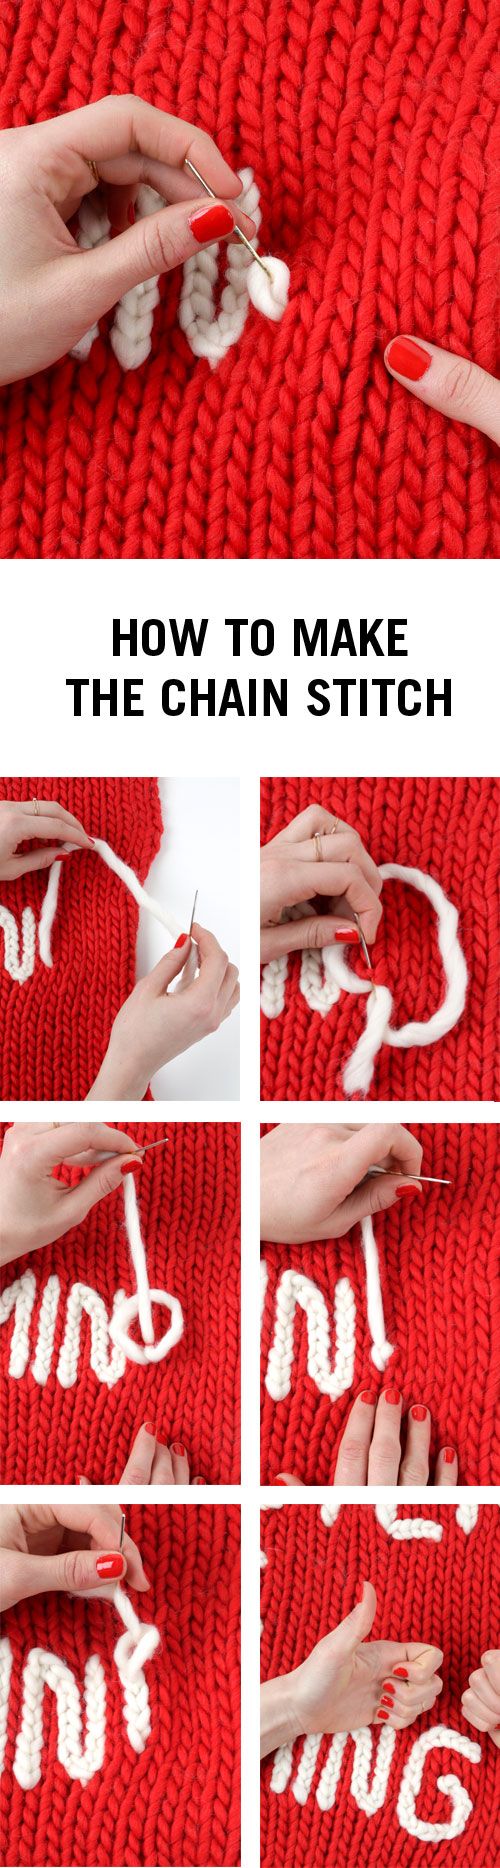 刺绣用锁链是一个简单的和引人注目的字母或图形添加到你的针织衫。